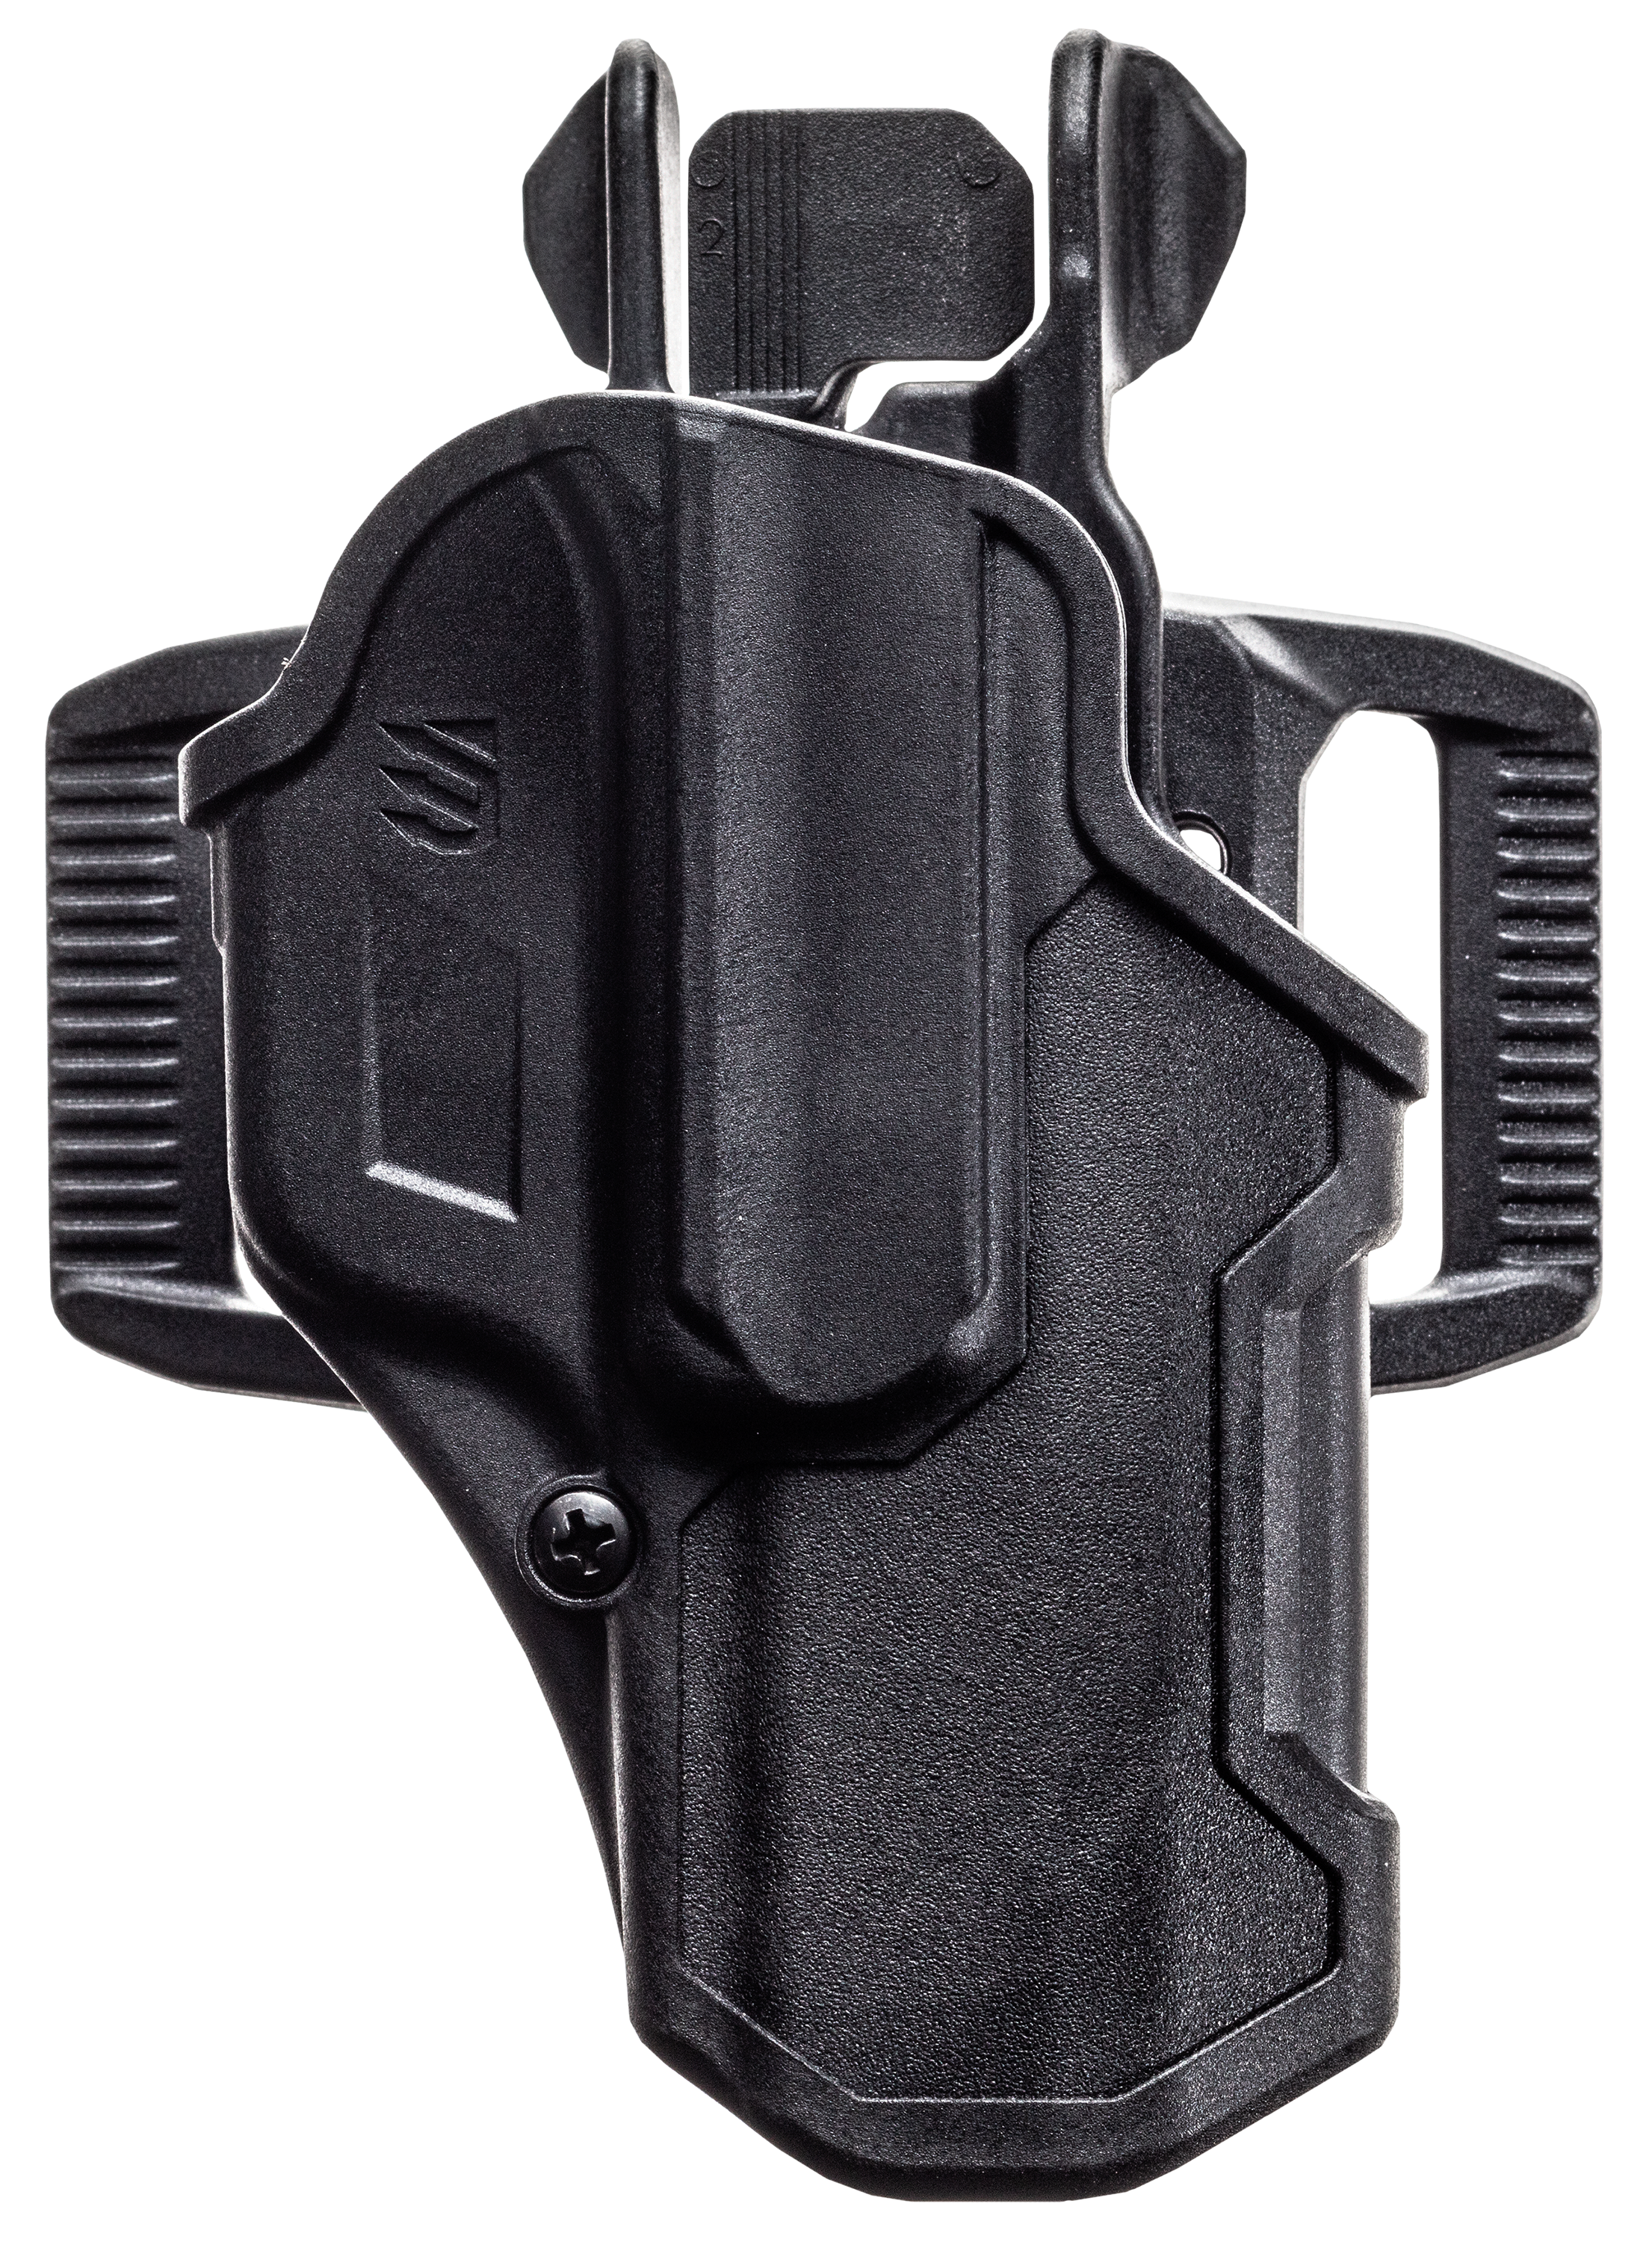 Blackhawk T-Series Level 2 Compact Non-Light Bearing Handgun Holster